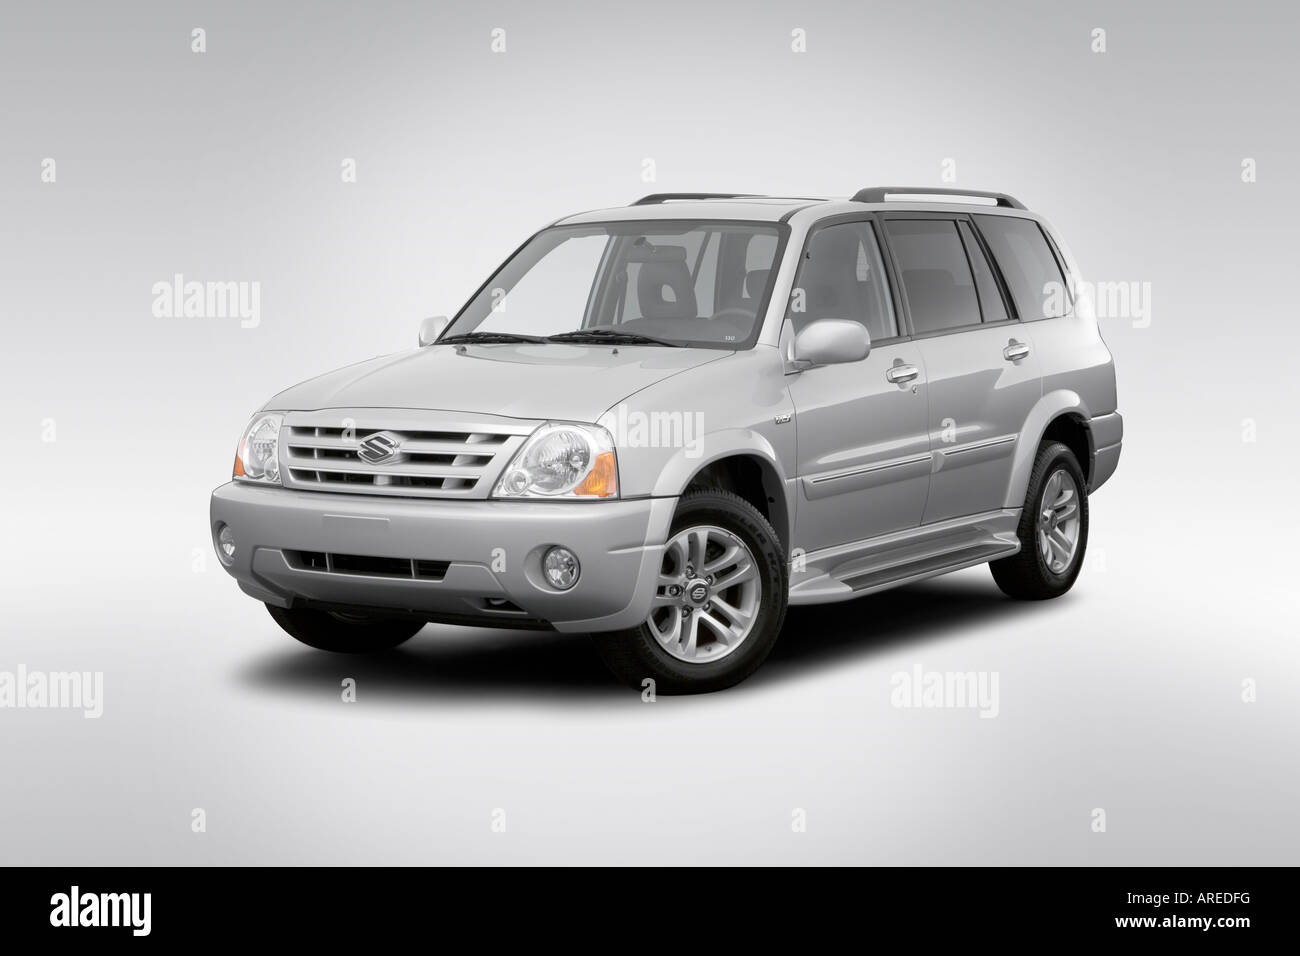 2006 Suzuki XL7 Premium in Silver - Front angle view Stock Photo - Alamy